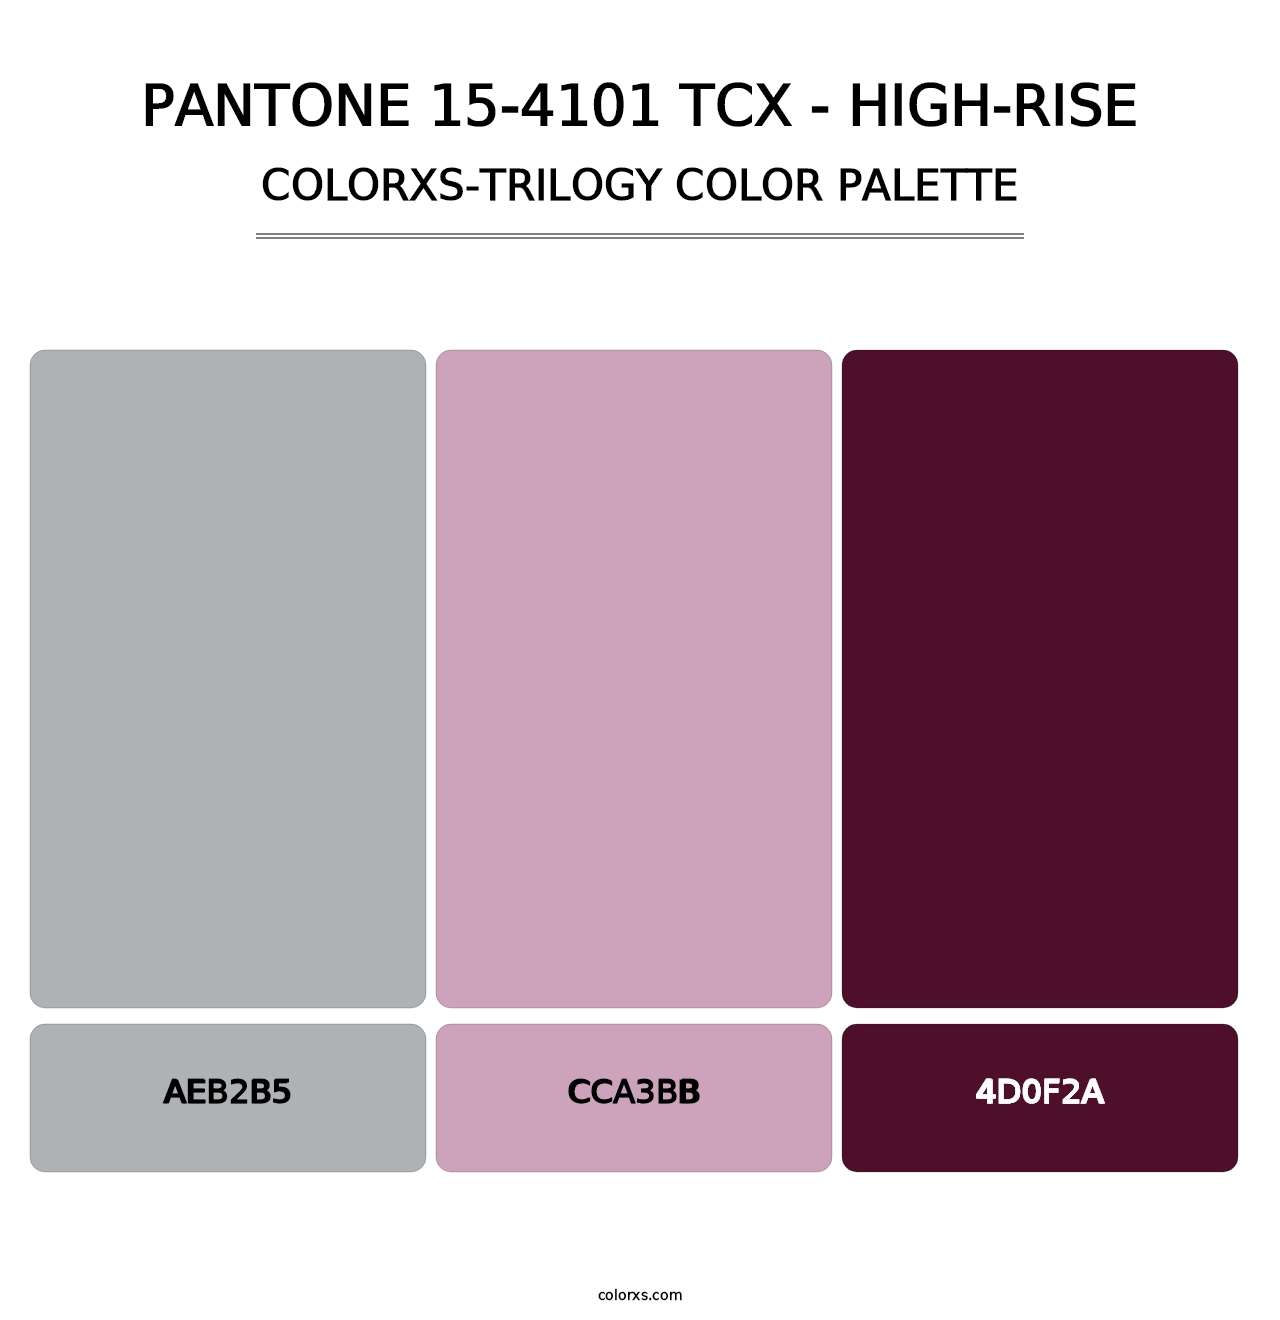 PANTONE 15-4101 TCX - High-rise - Colorxs Trilogy Palette